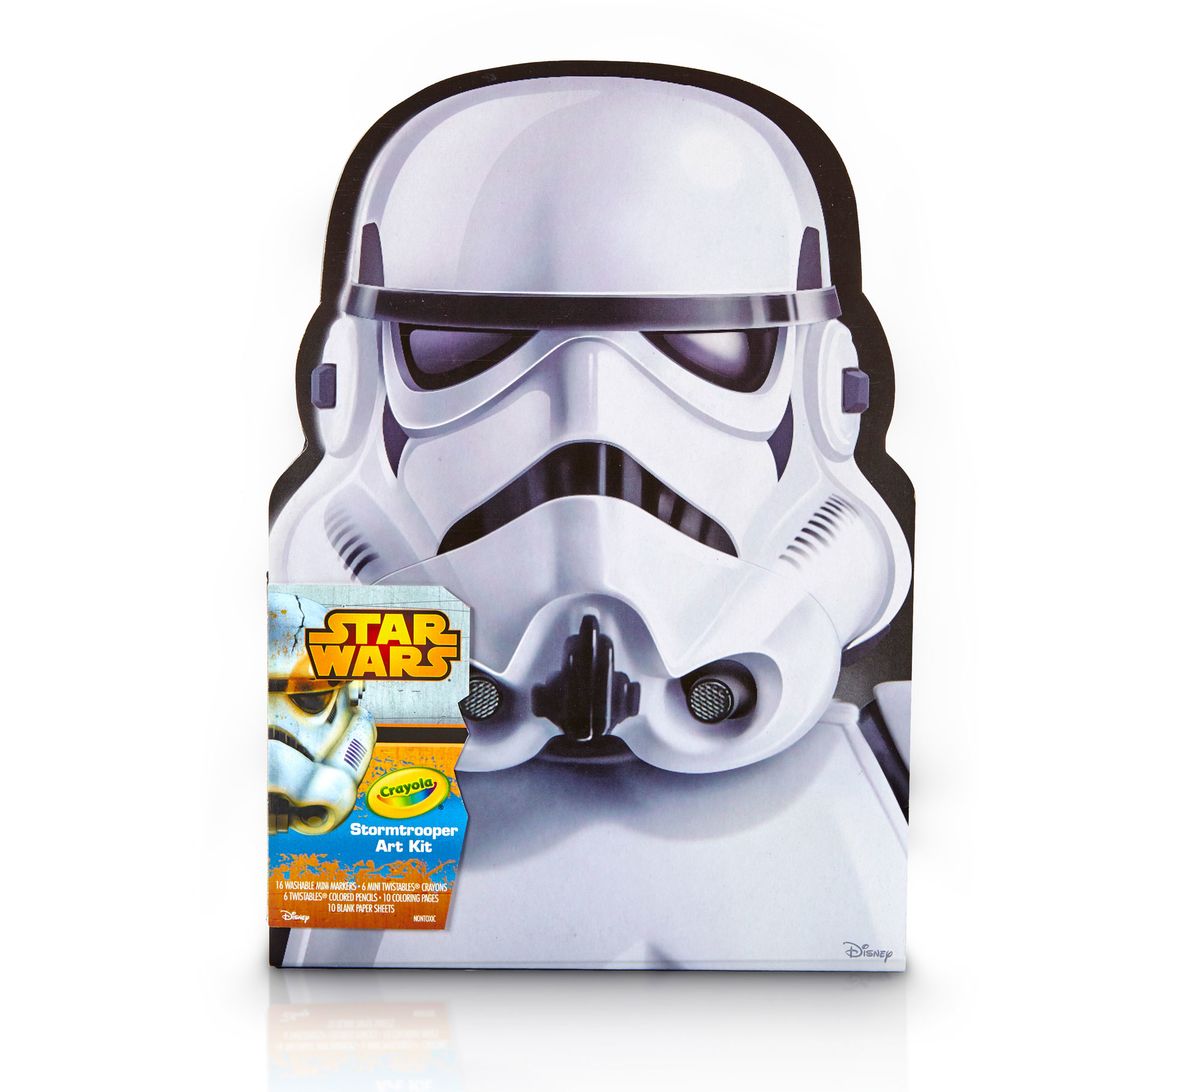 Star Wars Stormtrooper Art Case - Crayola